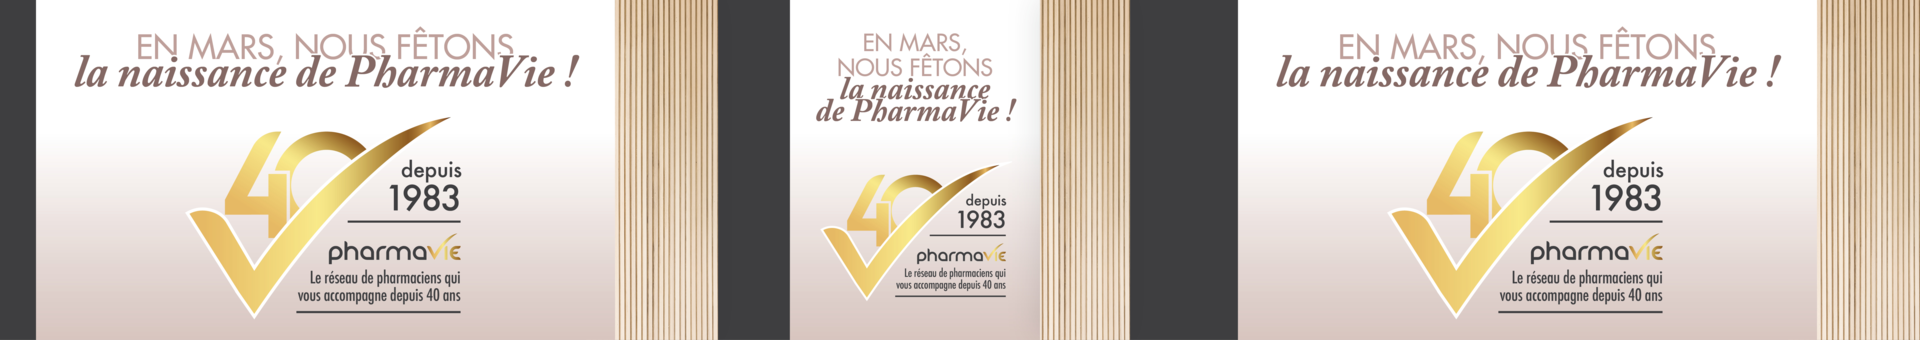 Pharmacie des Grands Champs,Saint-Avertin